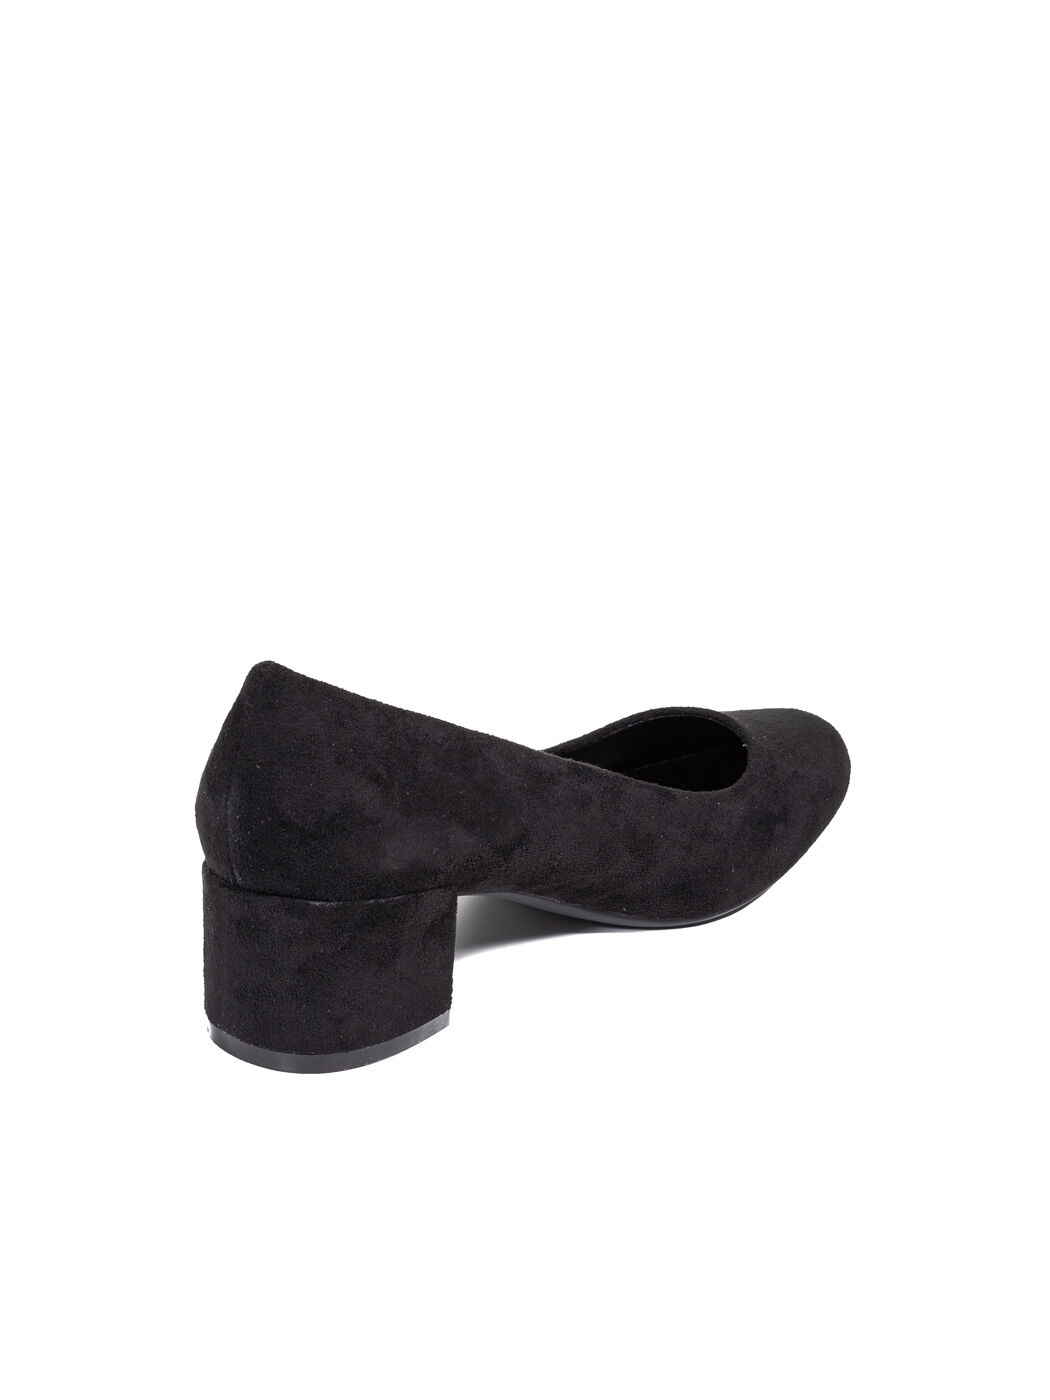 Туфли женские чёрные экозамша каблук устойчивый демисезон 1M вид 1